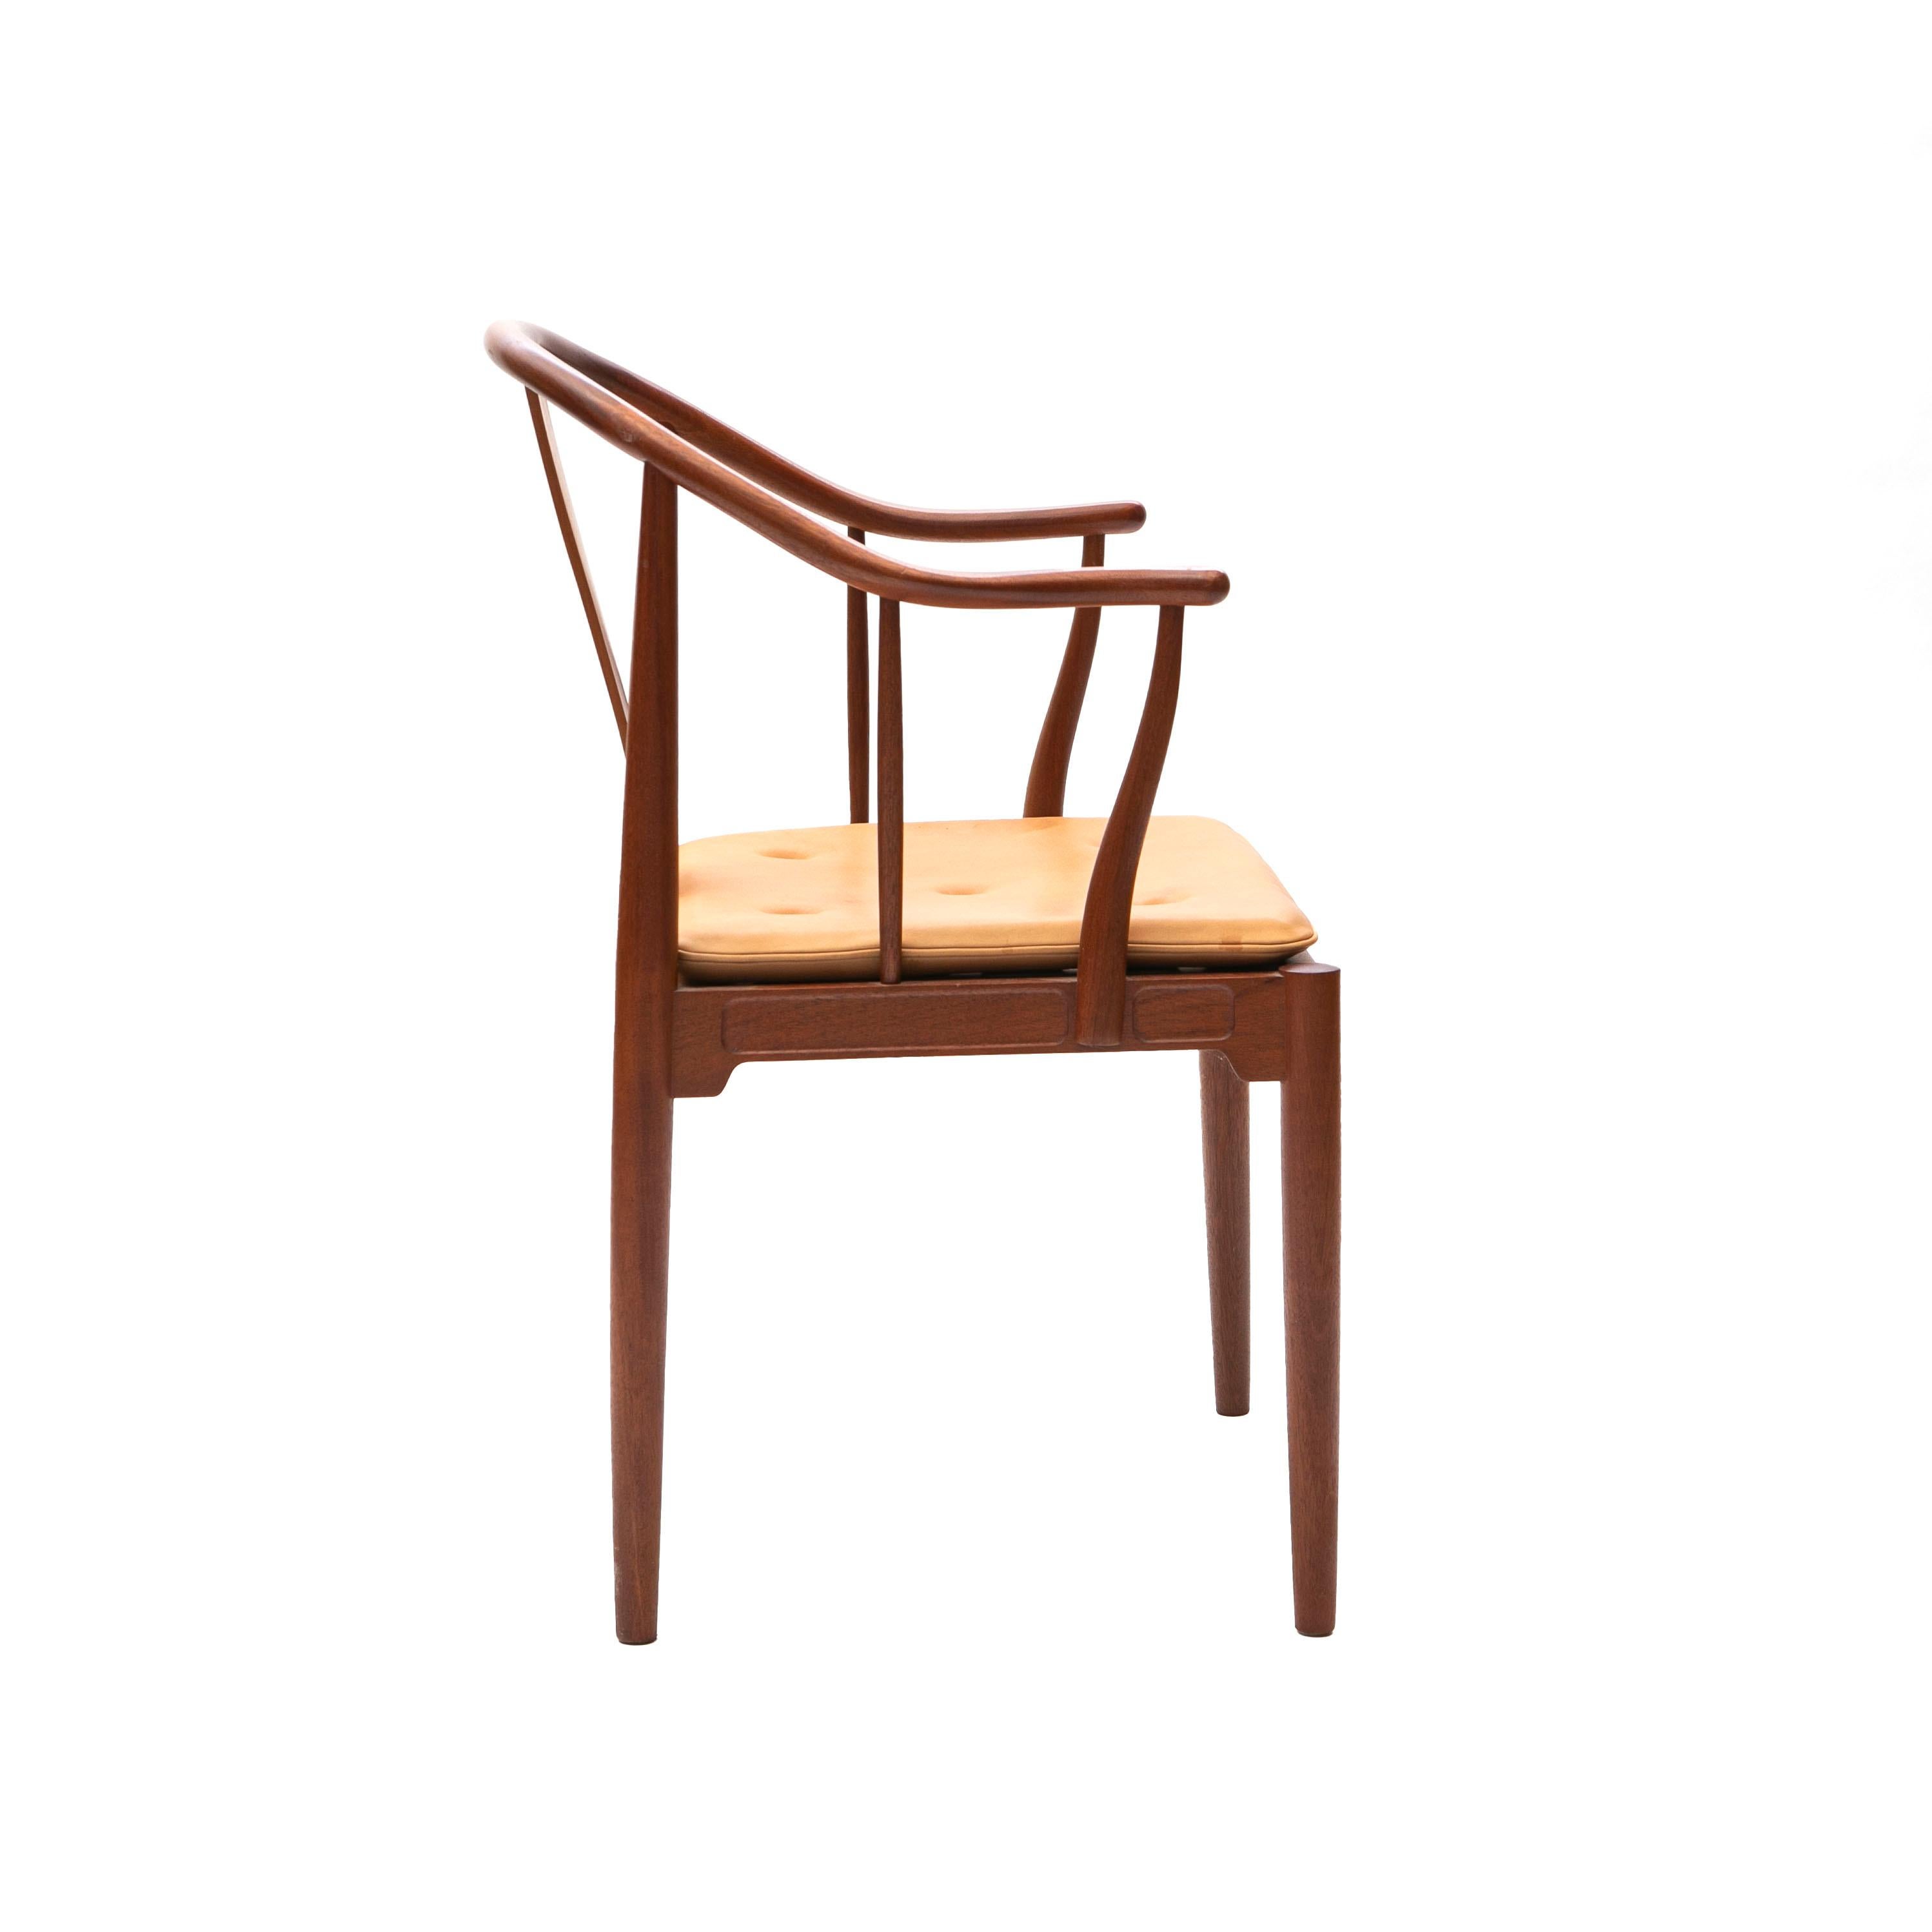 Hans J. Wegner The China Chair in Mahagoni mit Naturlederkissen.
Entworfen 1944 und hergestellt von Fritz Hansen, 1991.

Sehr guter Originalzustand.